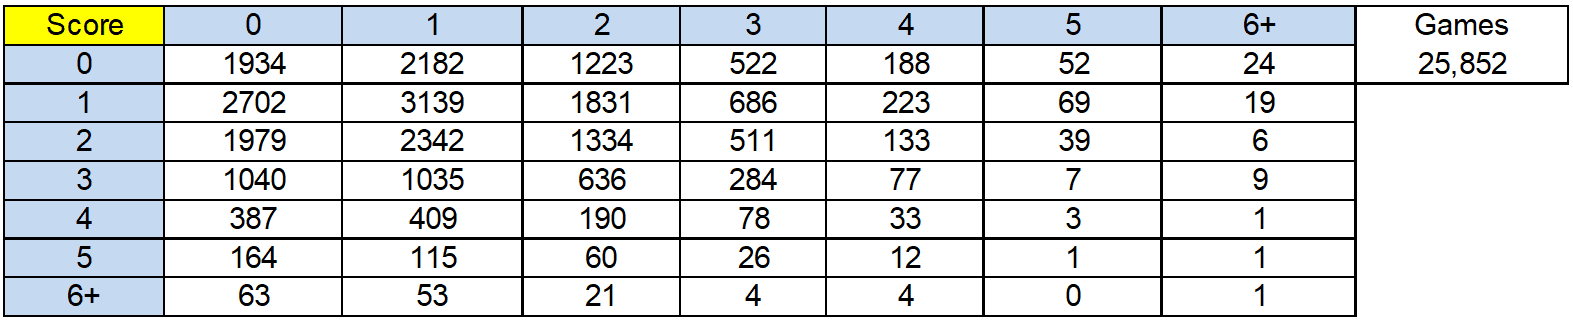 tabla de puntuaciones